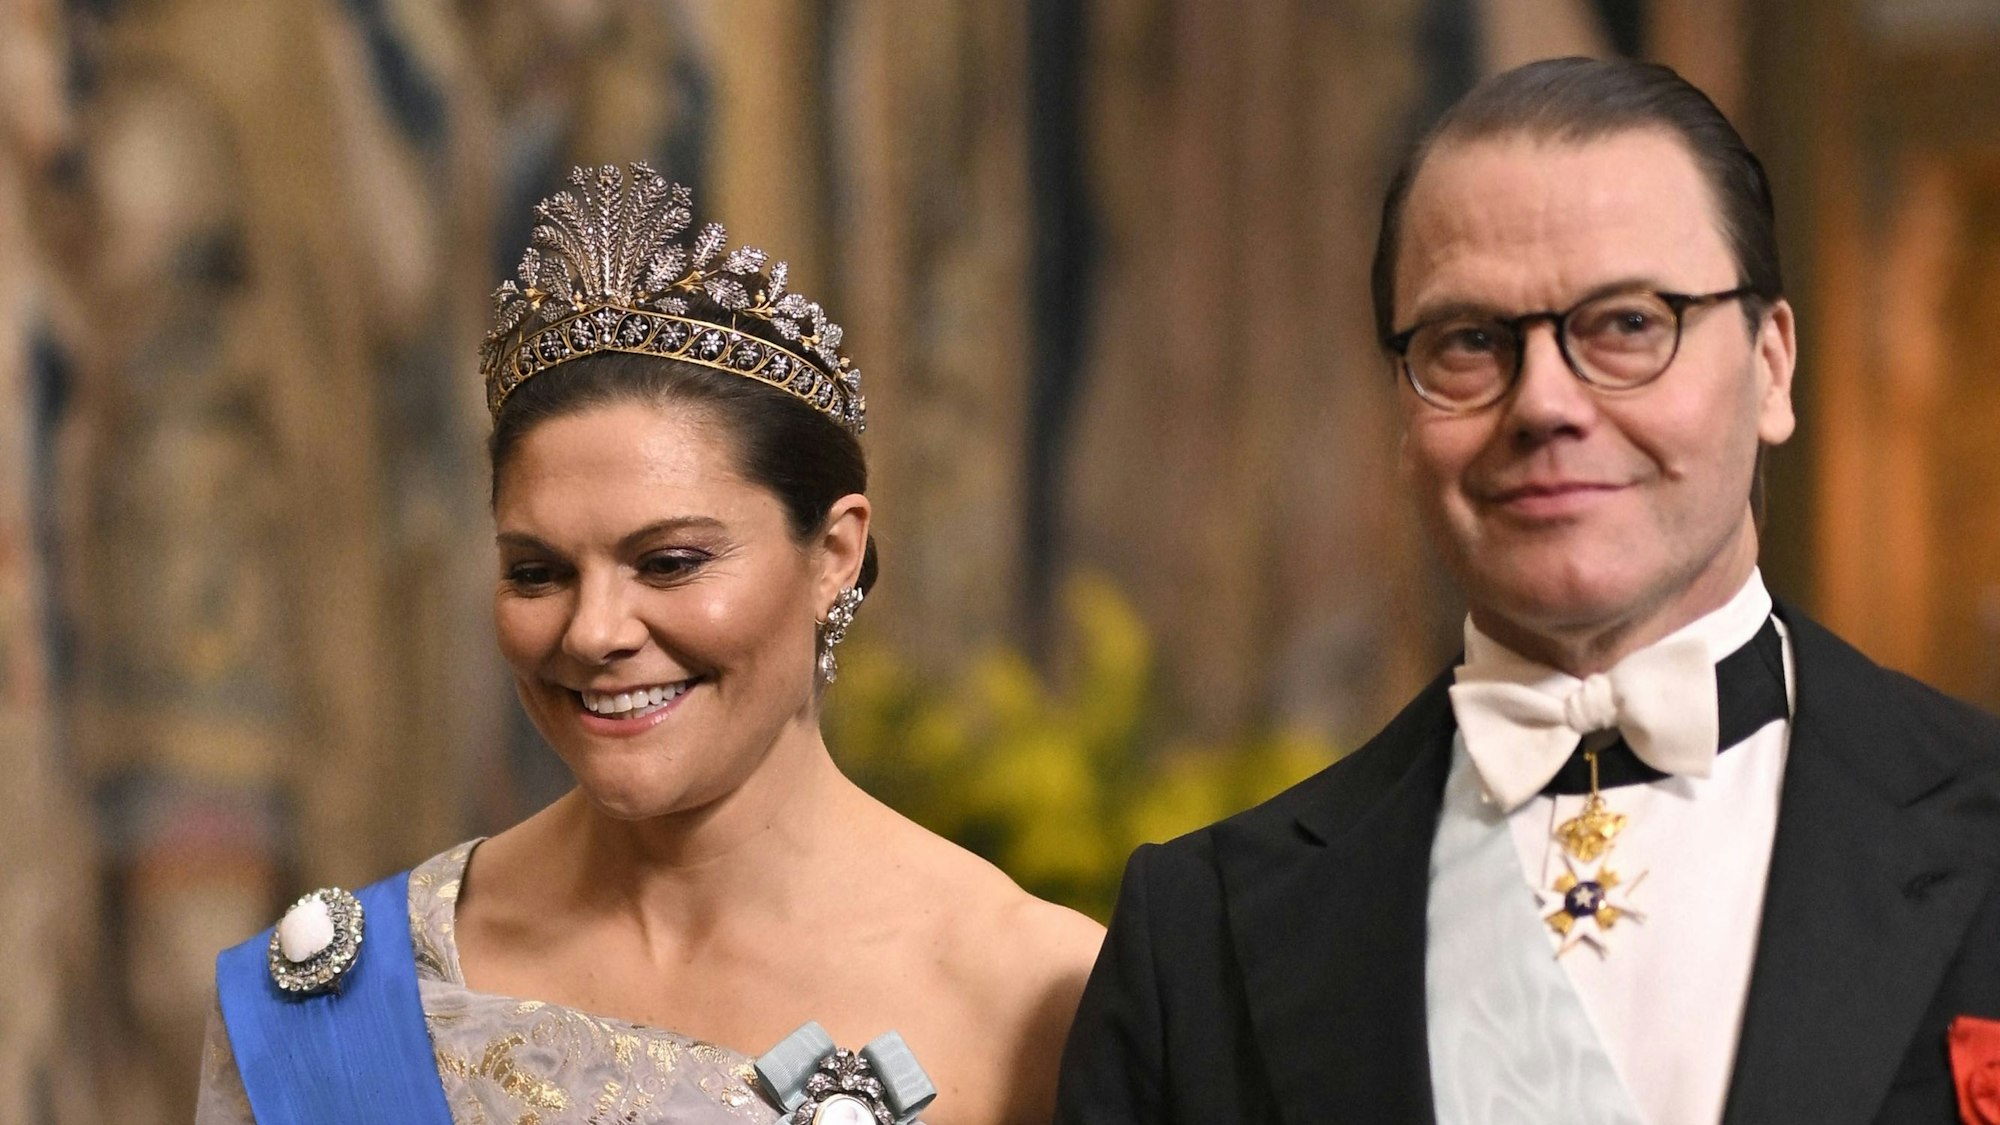 Kronprinzessin Victoria und Prinz Daniel treffen im Stockholmer Schloss ein.